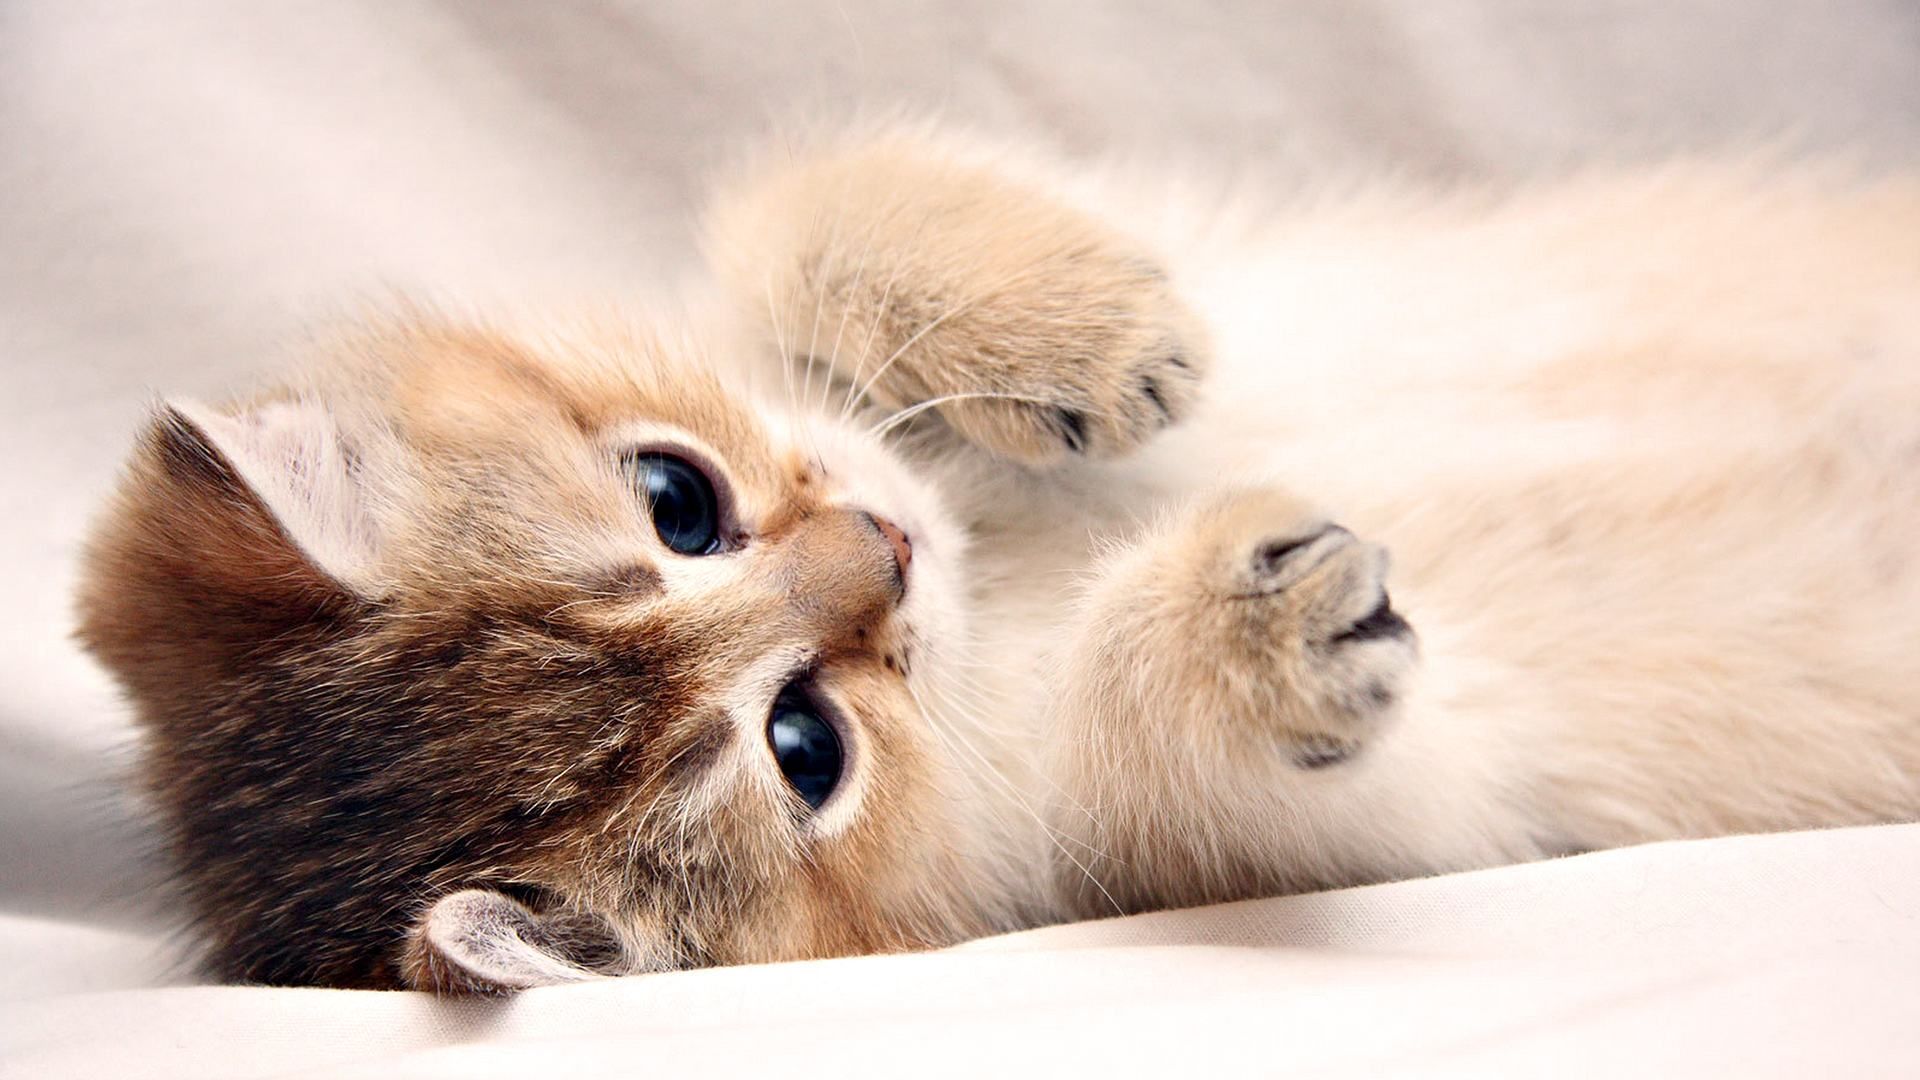 Những chú mèo con mới sinh với đôi mắt rất to và lông mềm mại sẽ khiến bạn muốn ôm chúng lên và yêu thương chúng. Quá đáng yêu mà! Hãy xem hình ảnh của những chú mèo con này để cảm nhận được vẻ đáng yêu và dễ thương của chúng.